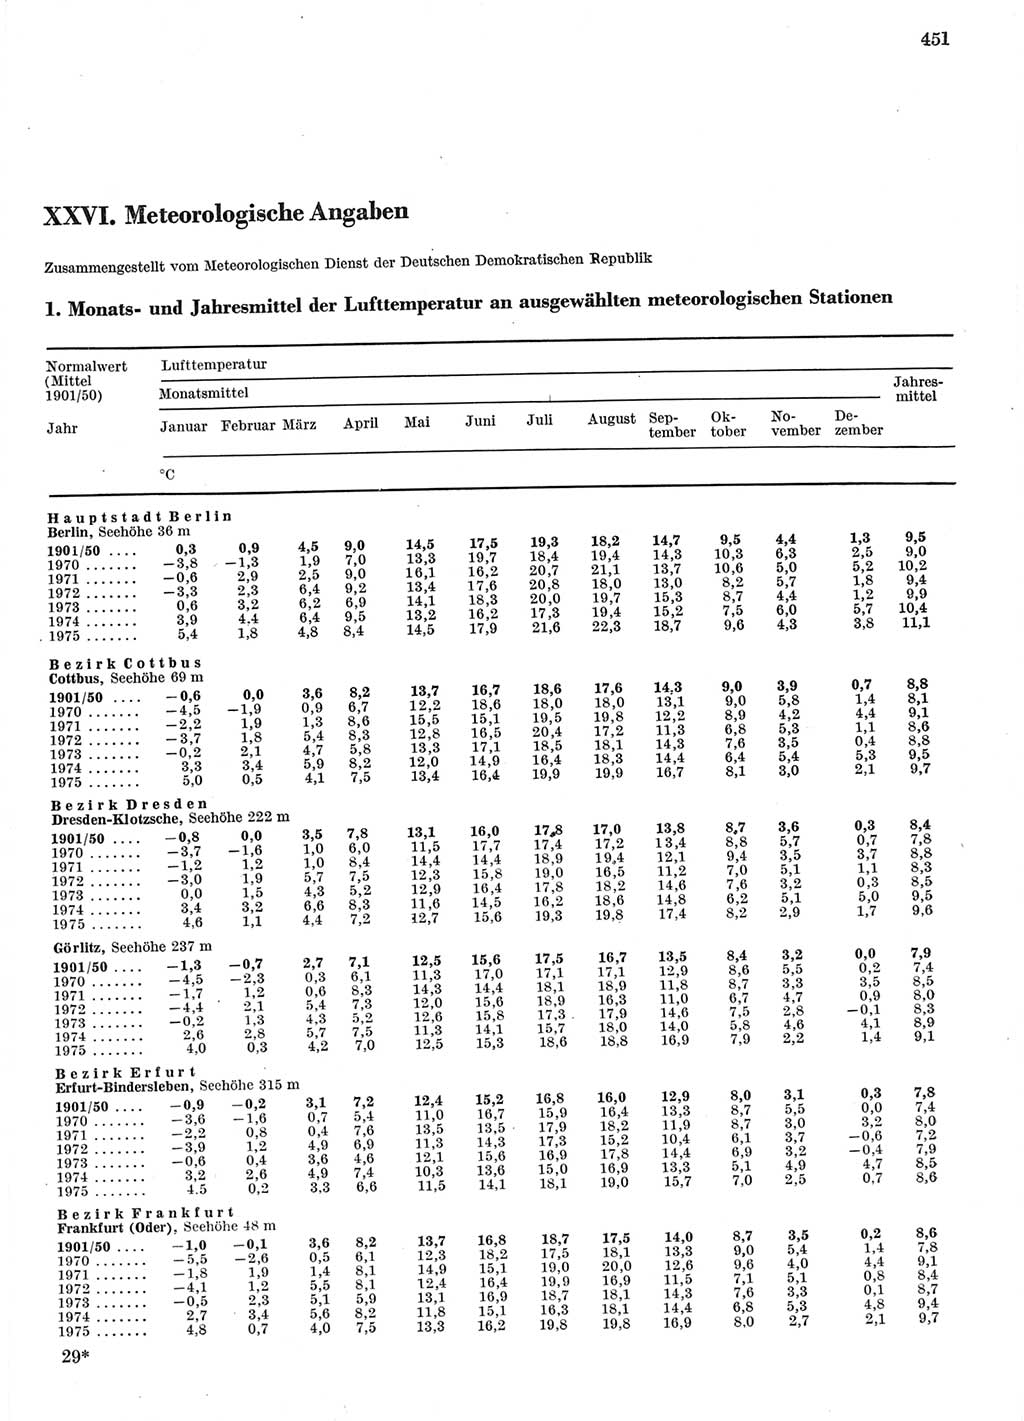 Statistisches Jahrbuch der Deutschen Demokratischen Republik (DDR) 1976, Seite 451 (Stat. Jb. DDR 1976, S. 451)